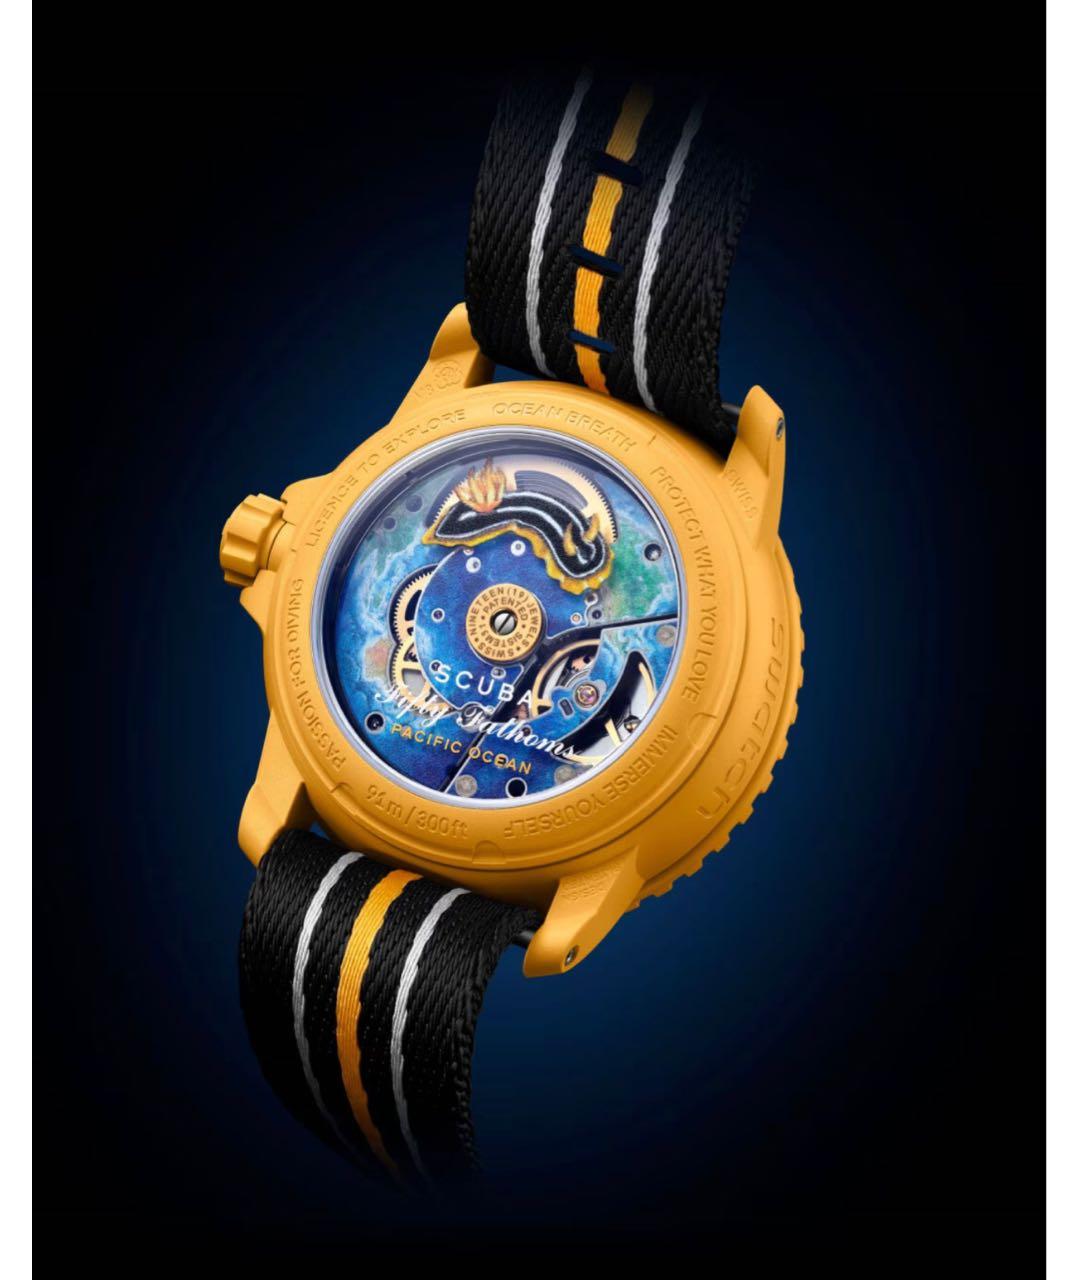 Blancpain Желтые керамические часы, фото 2